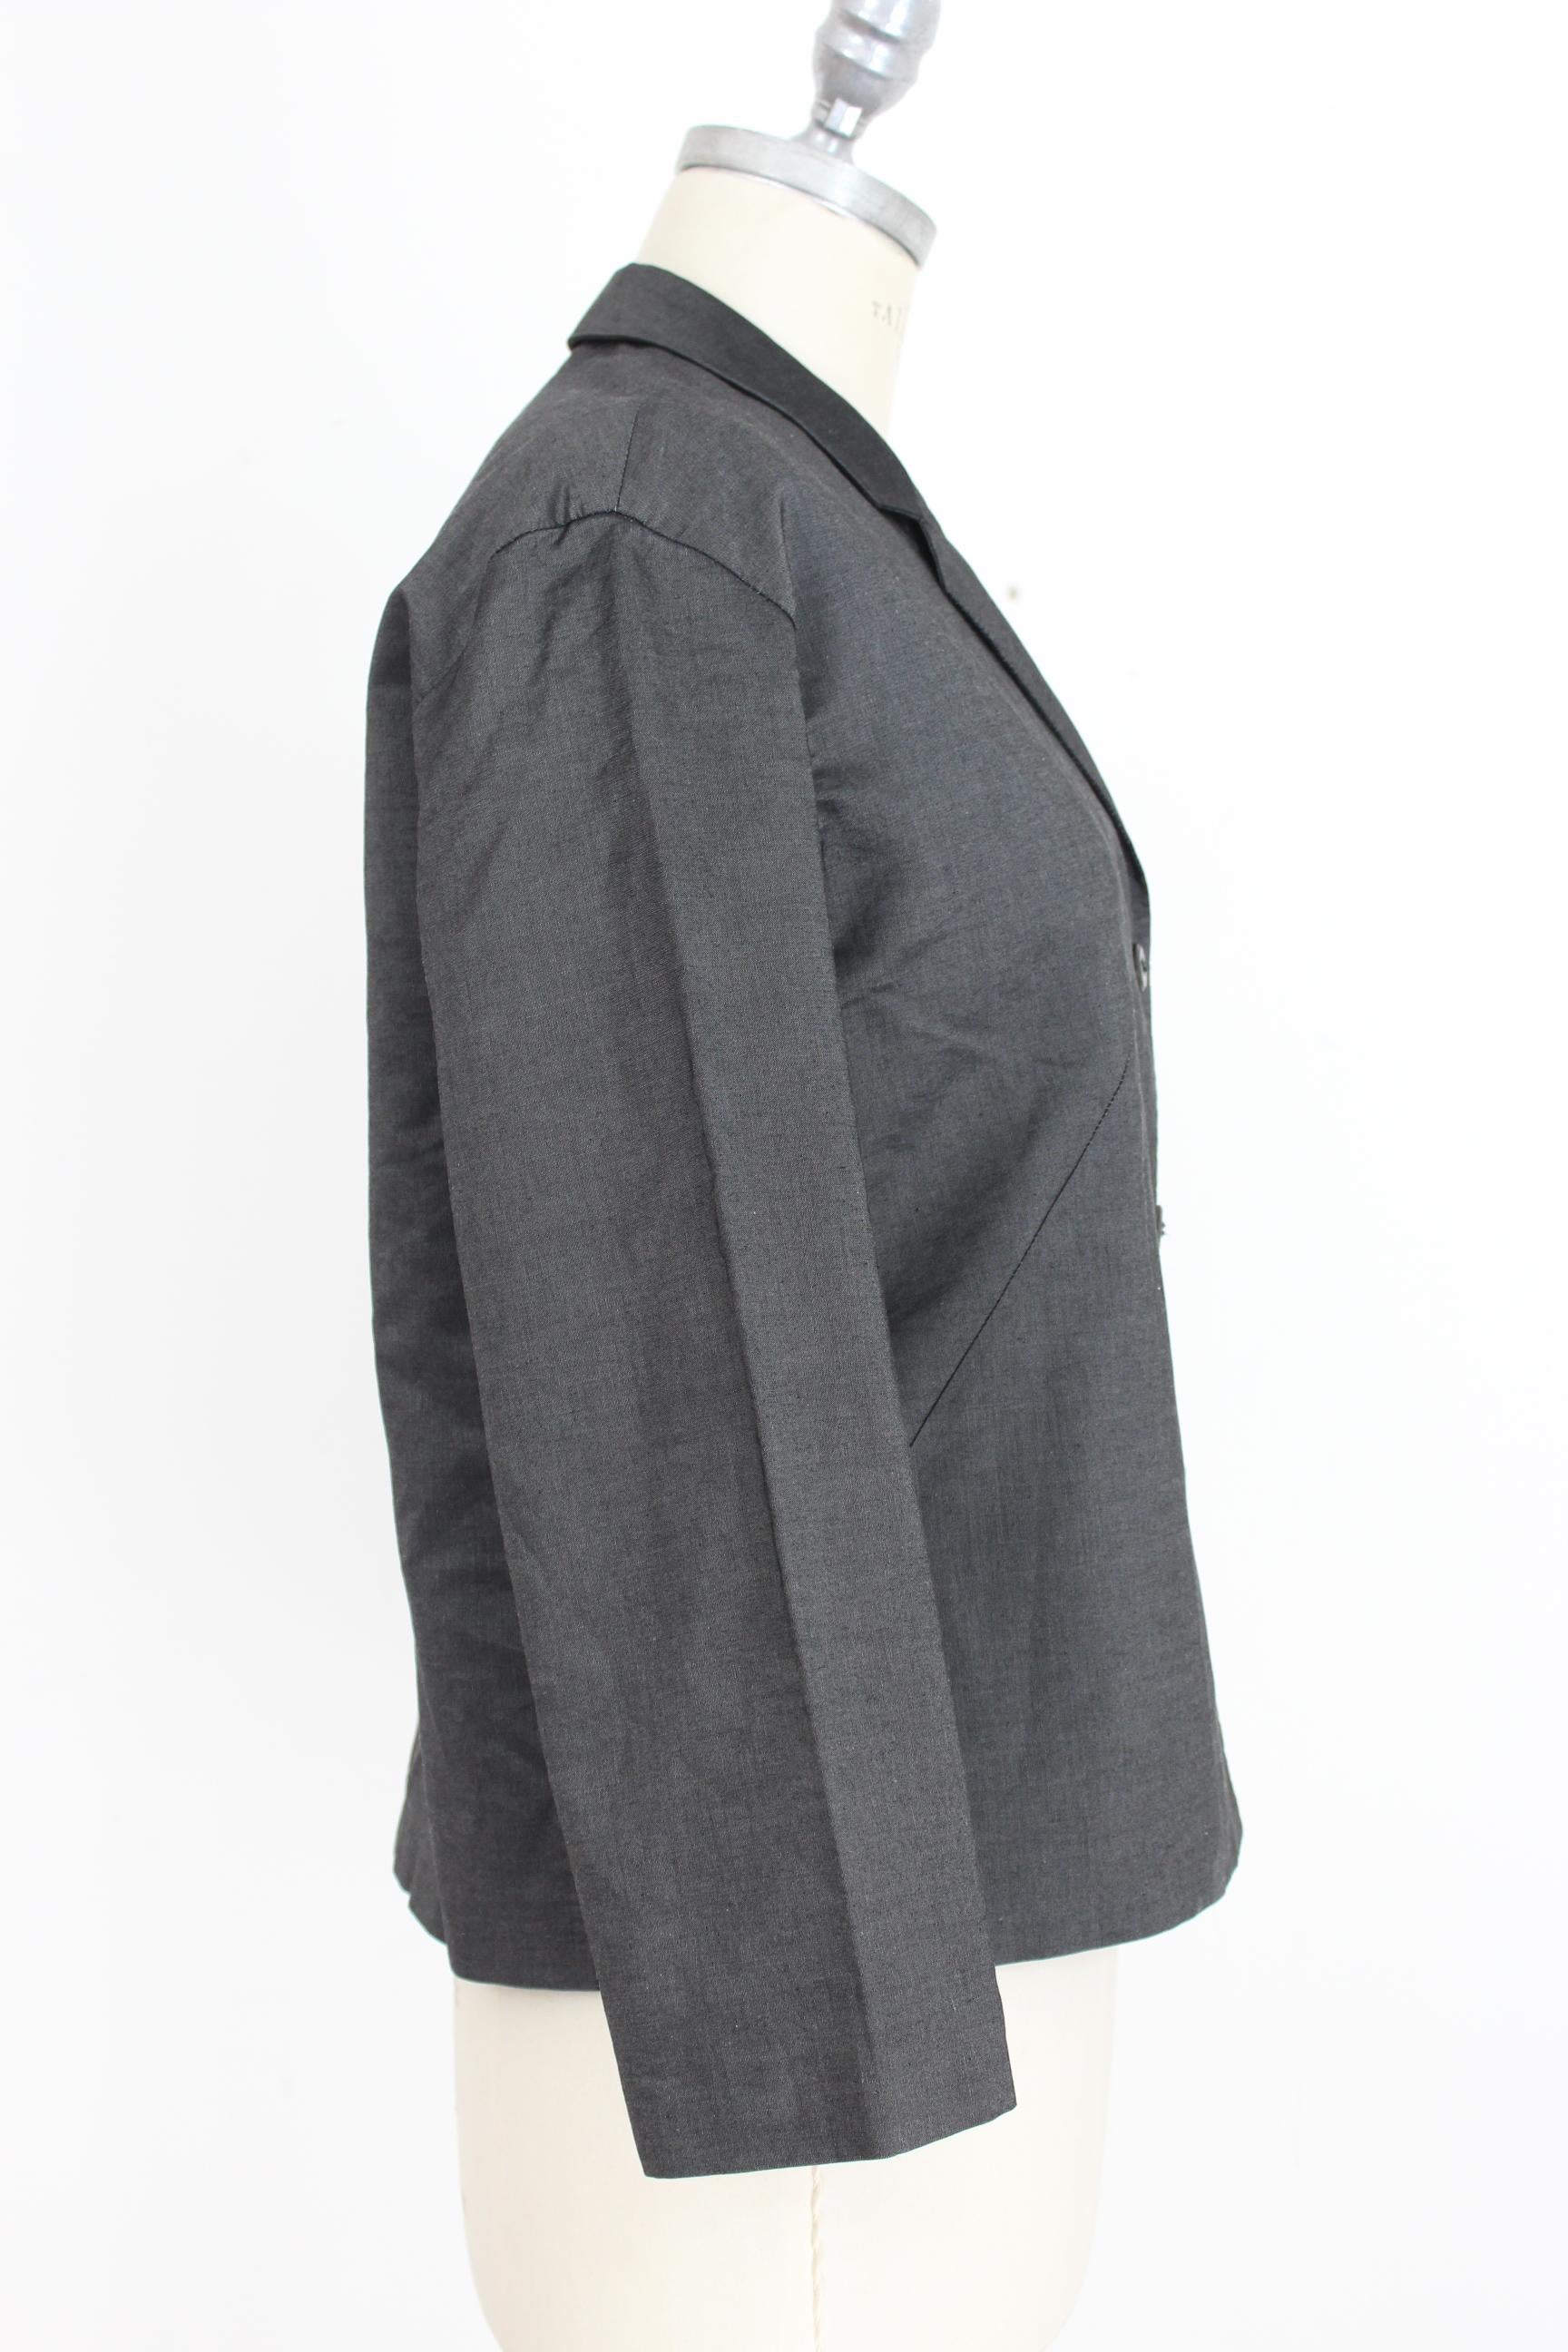 Prada Dark Gray Cotton Short Evening Soft Jacket  In Excellent Condition In Brindisi, Bt